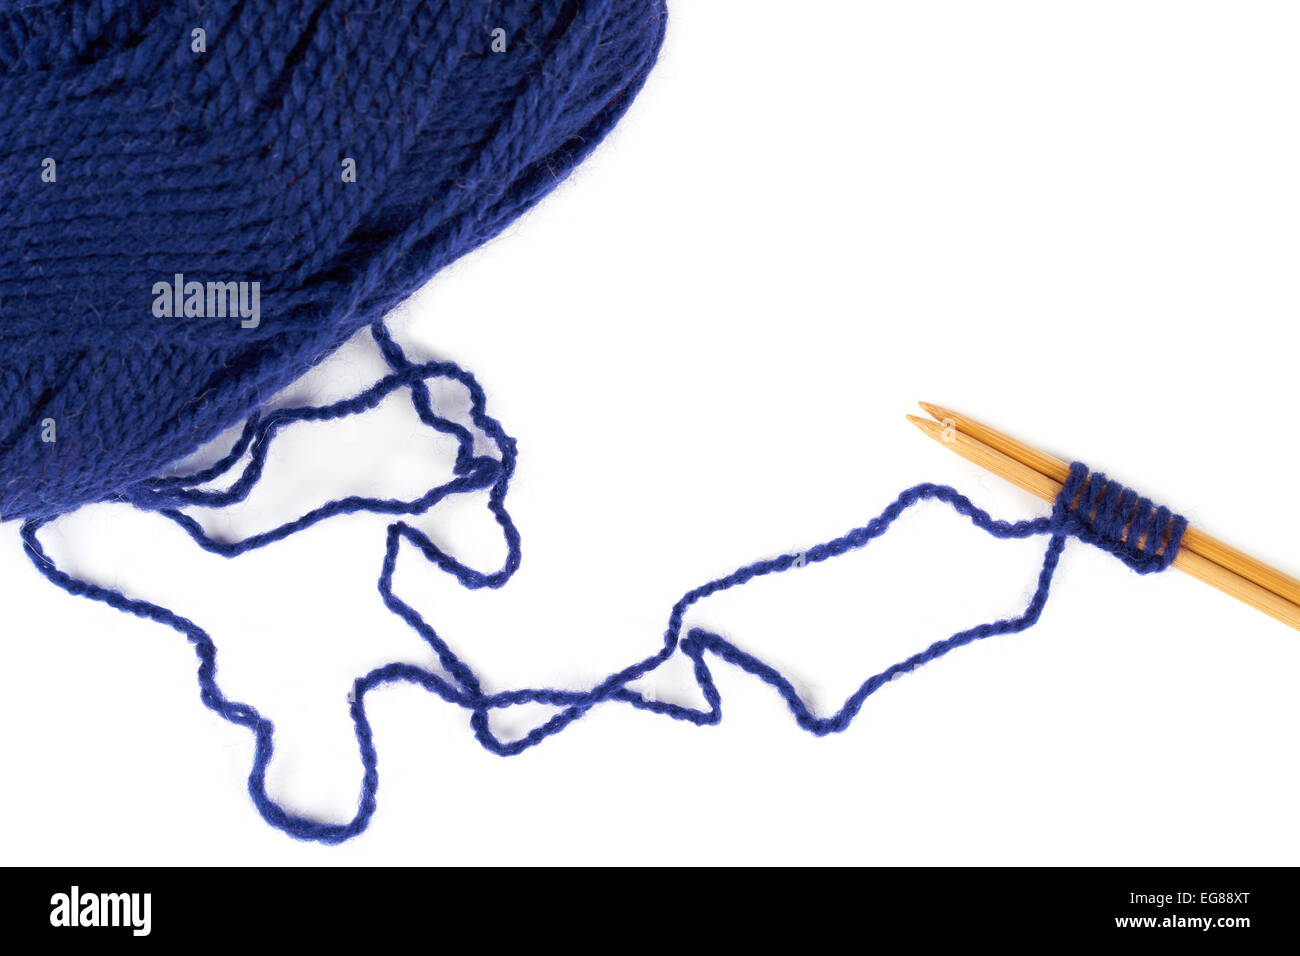 Au début de tricot. Une paire d'aiguilles à tricoter et un fil bleu Banque D'Images